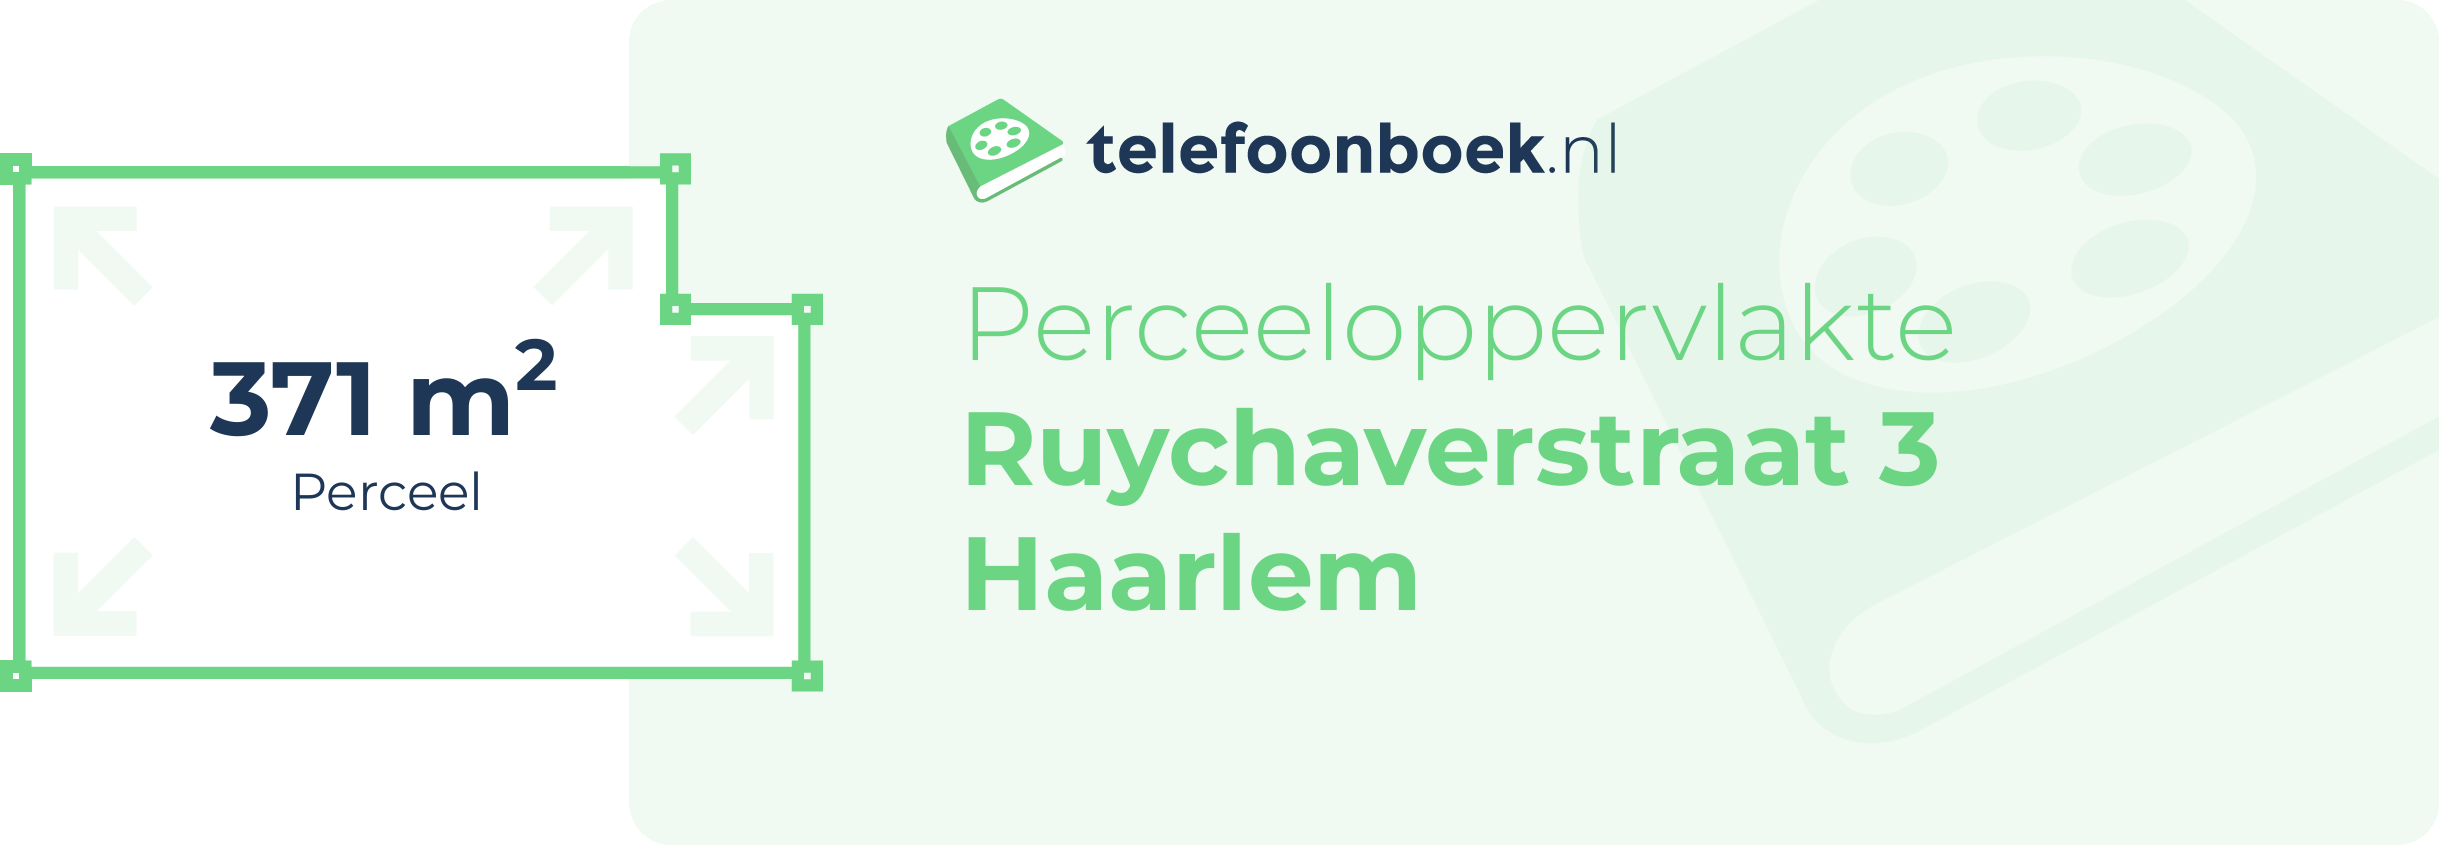 Perceeloppervlakte Ruychaverstraat 3 Haarlem